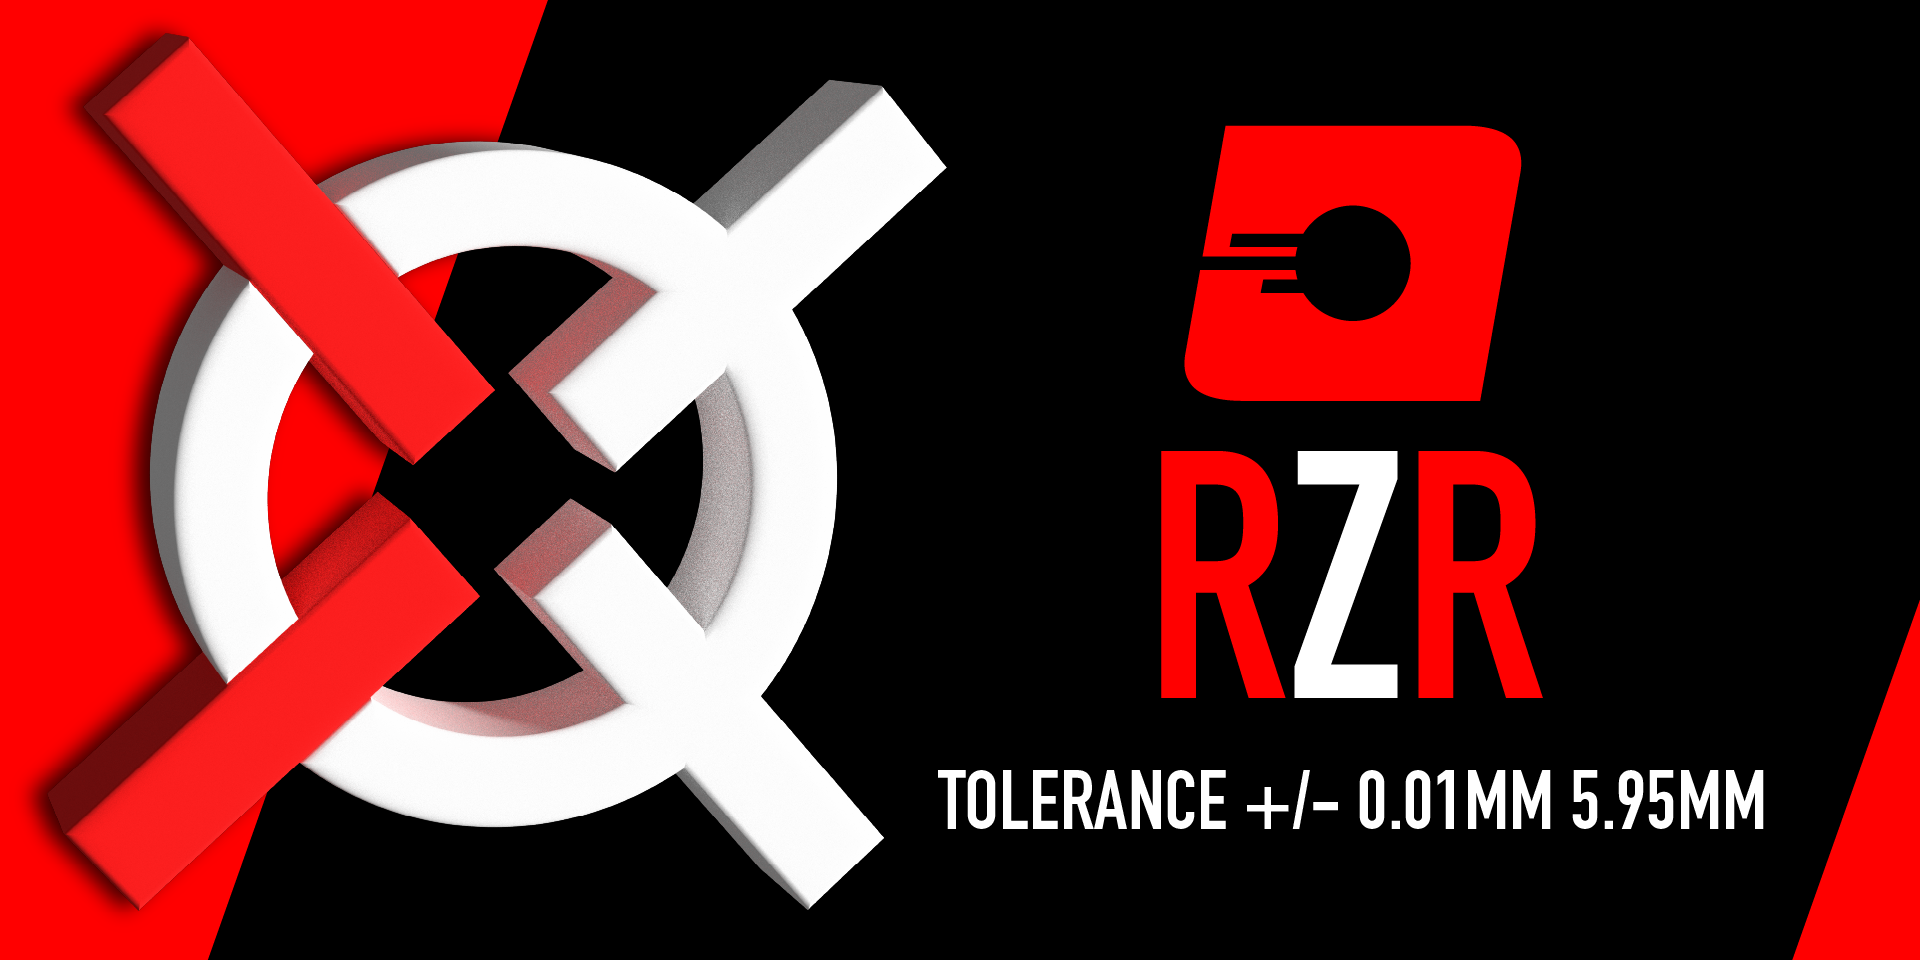 RZR BBs - Updated Range